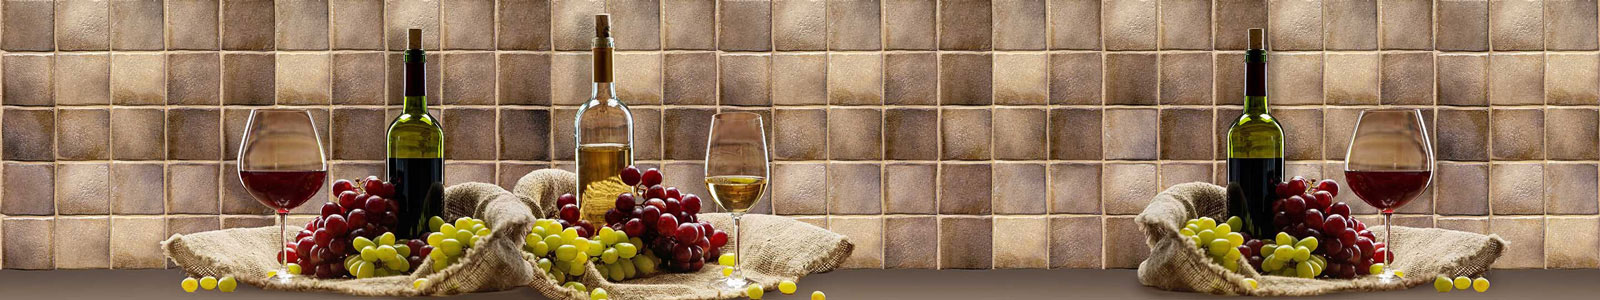 №3939 - Вино и виноград у стенки, отделанной плиткой